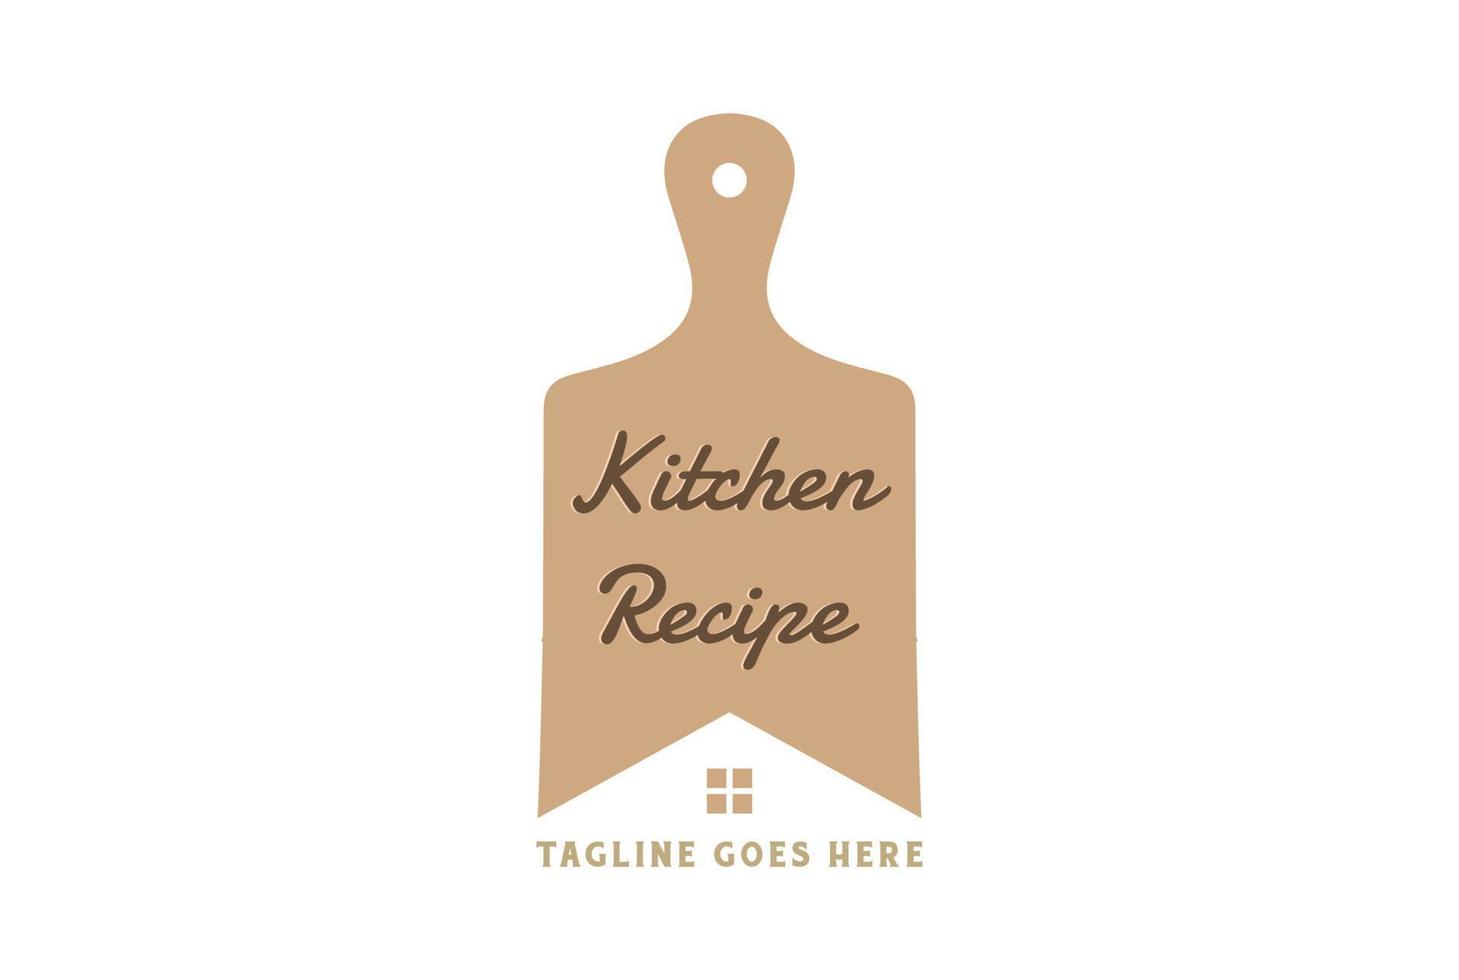 planche à découper en bois en bois minimaliste simple pour cuisine recette restaurant restauration nourriture cuisinier création de logo vecteur